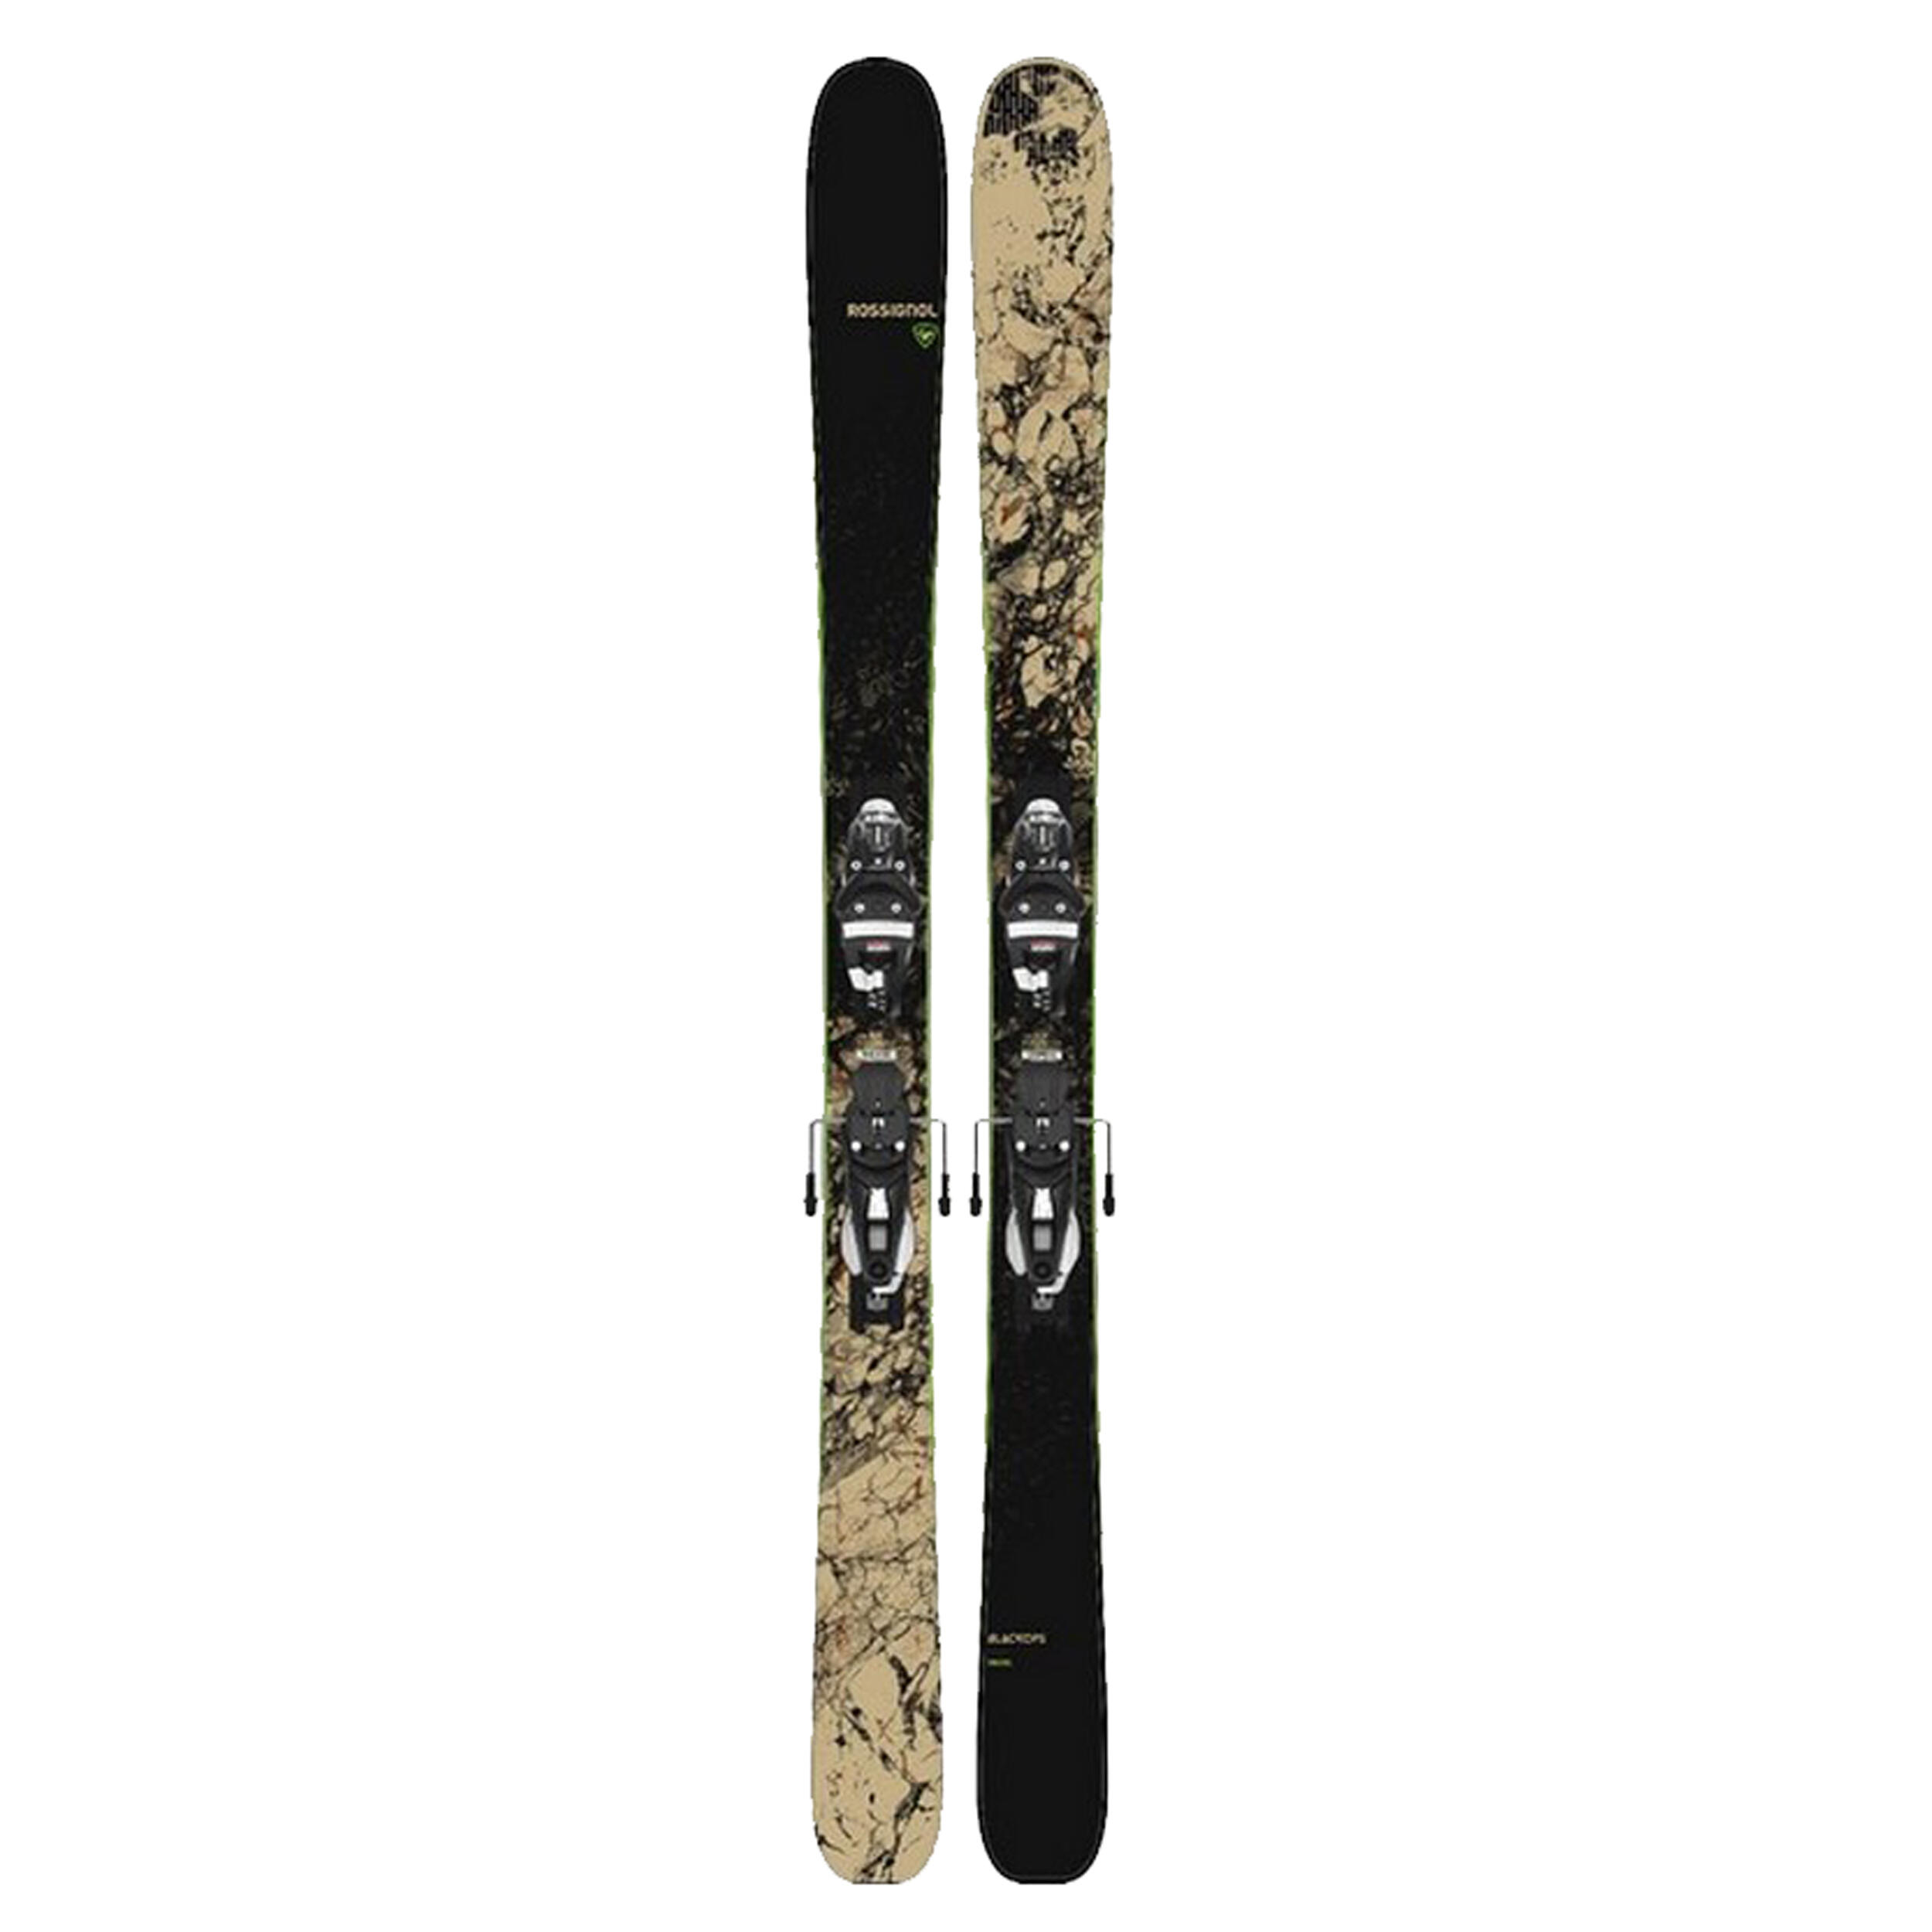 Rossignol Freeride Ski Pack Blackops Sender + Look Nx12 Bindings